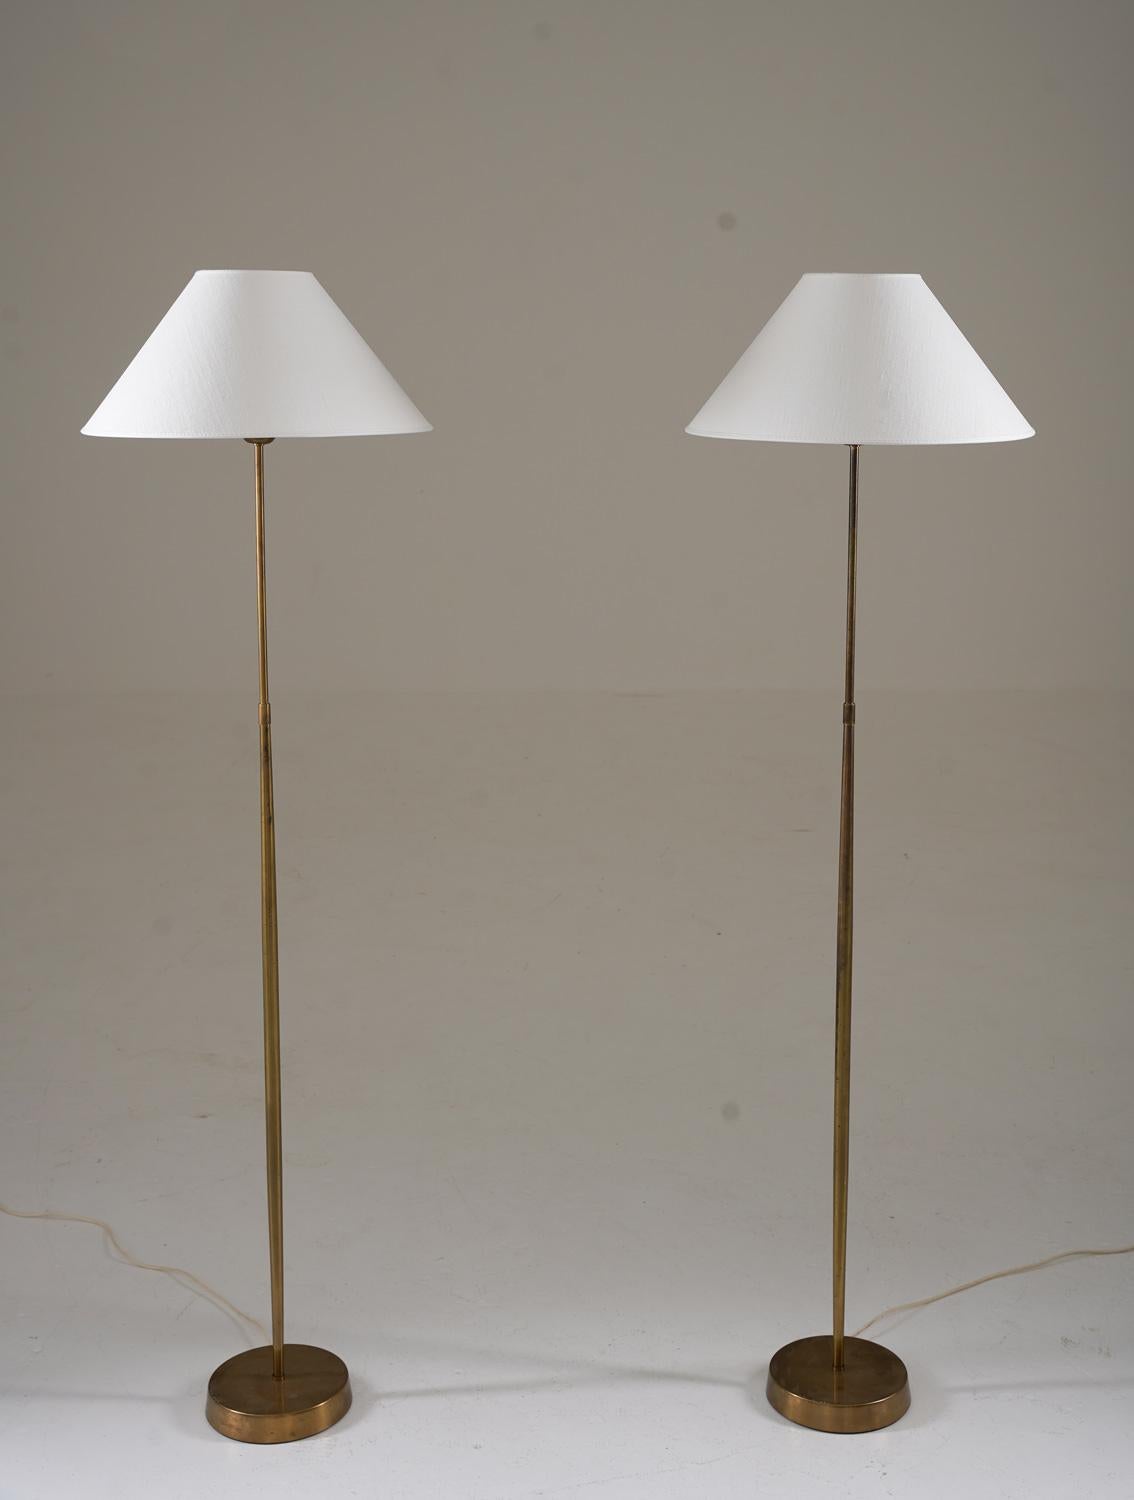 Paire de lampadaires par ASEA, Suède, années 1950.
De belles lampes au design minimaliste, où les tiges légèrement en forme de sablier donnent une impression d'exclusivité.

Condit : Bon état d'origine avec quelques légères bosses sur la base et les